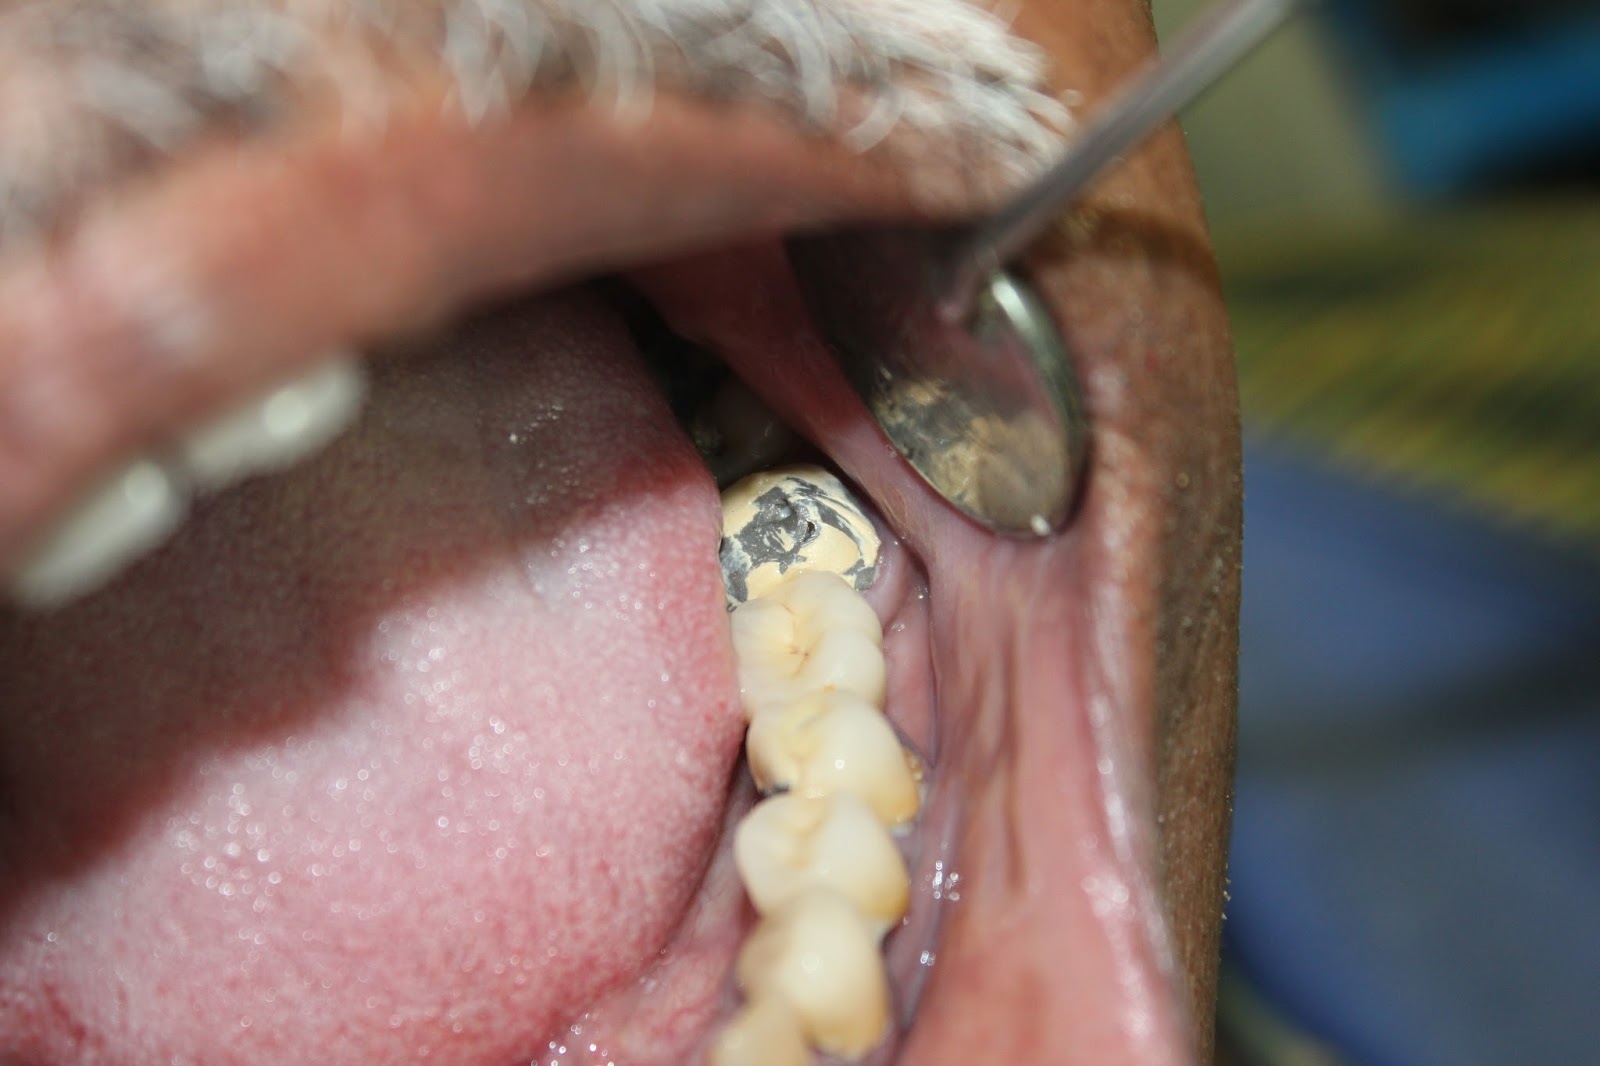 Фото: скол покрытия на металлокерамическом зубе — довольно частая проблема